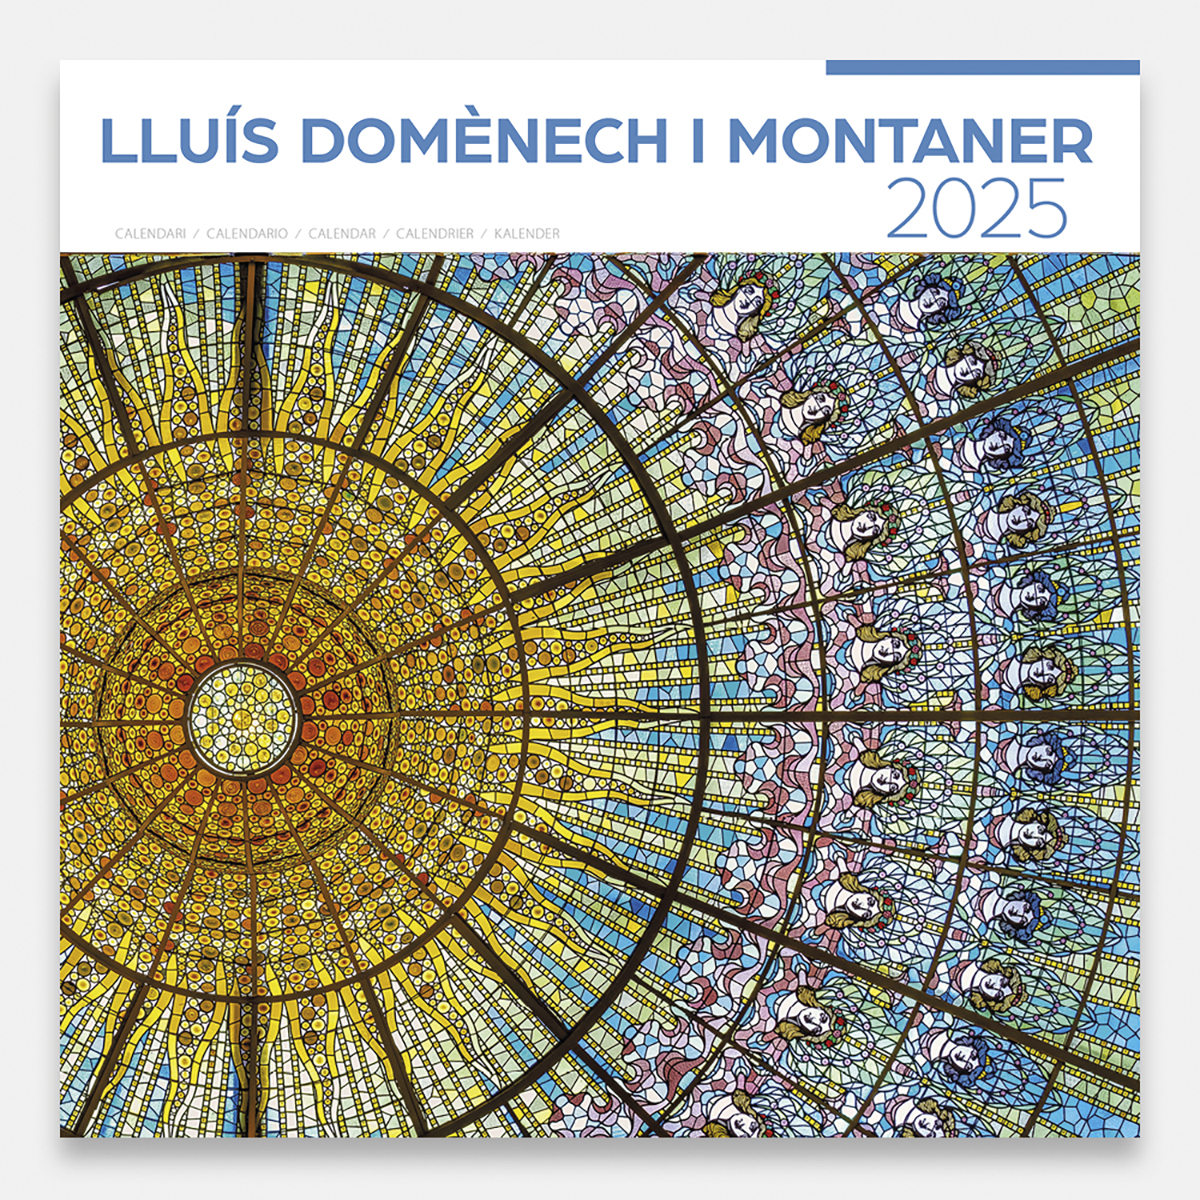 Calendrier 2025 Lluís Domènech i Montaner 25dmg1a calendario pared 2025 lluis domenech